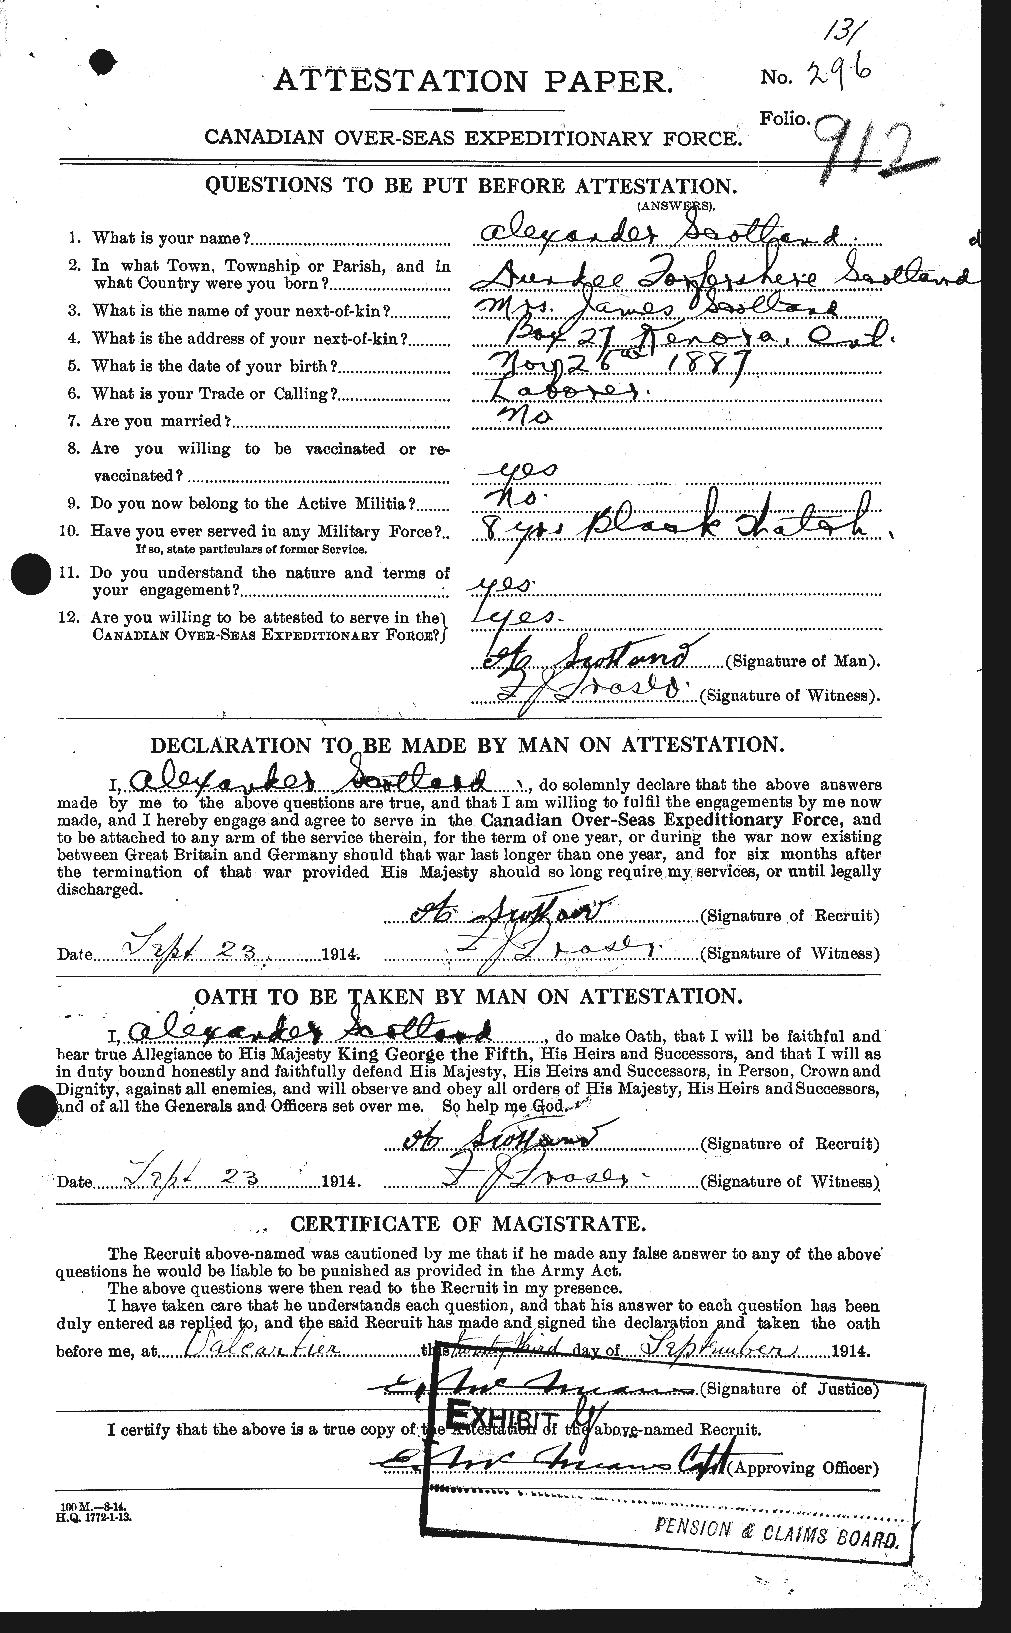 Dossiers du Personnel de la Première Guerre mondiale - CEC 079304a